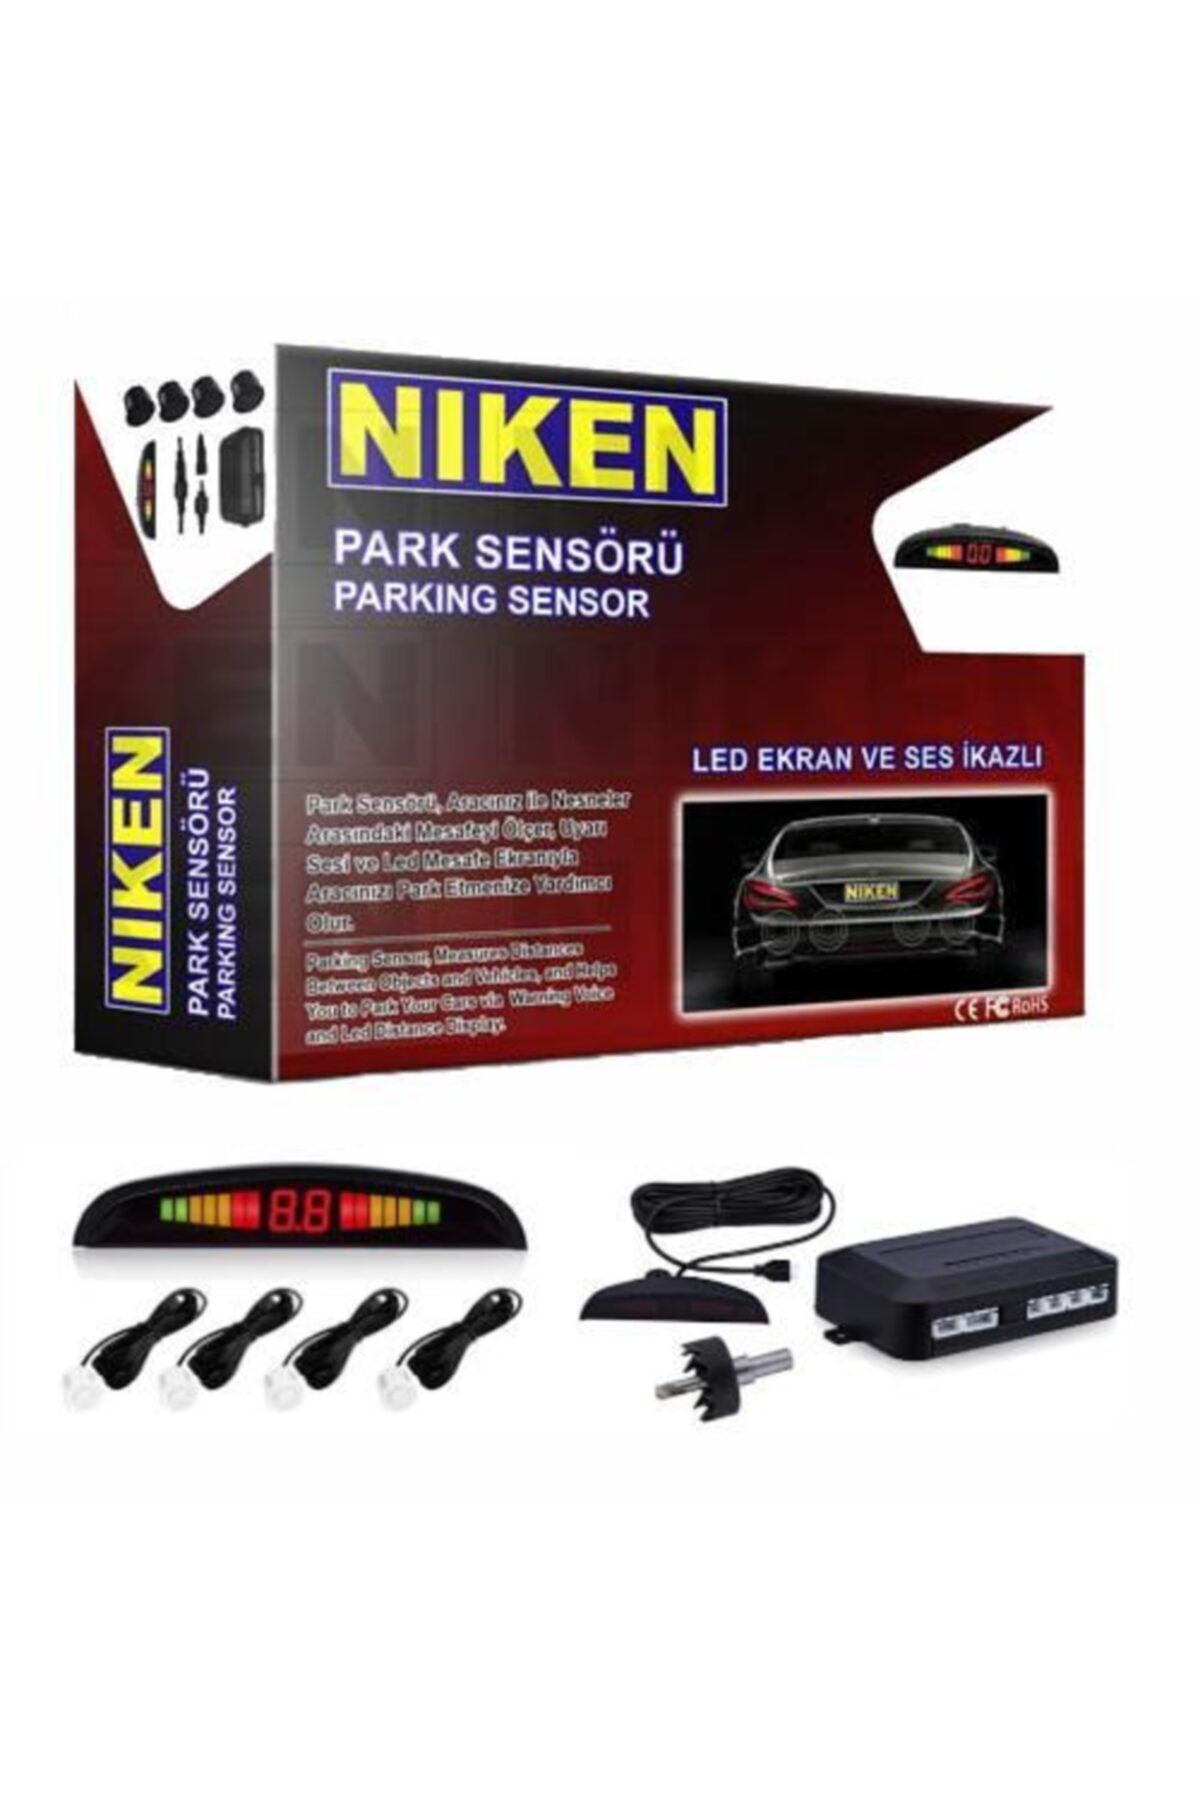 Niken Park Sensörü Ekranlı Ve Ses Ikazlı Garantili Beyaz